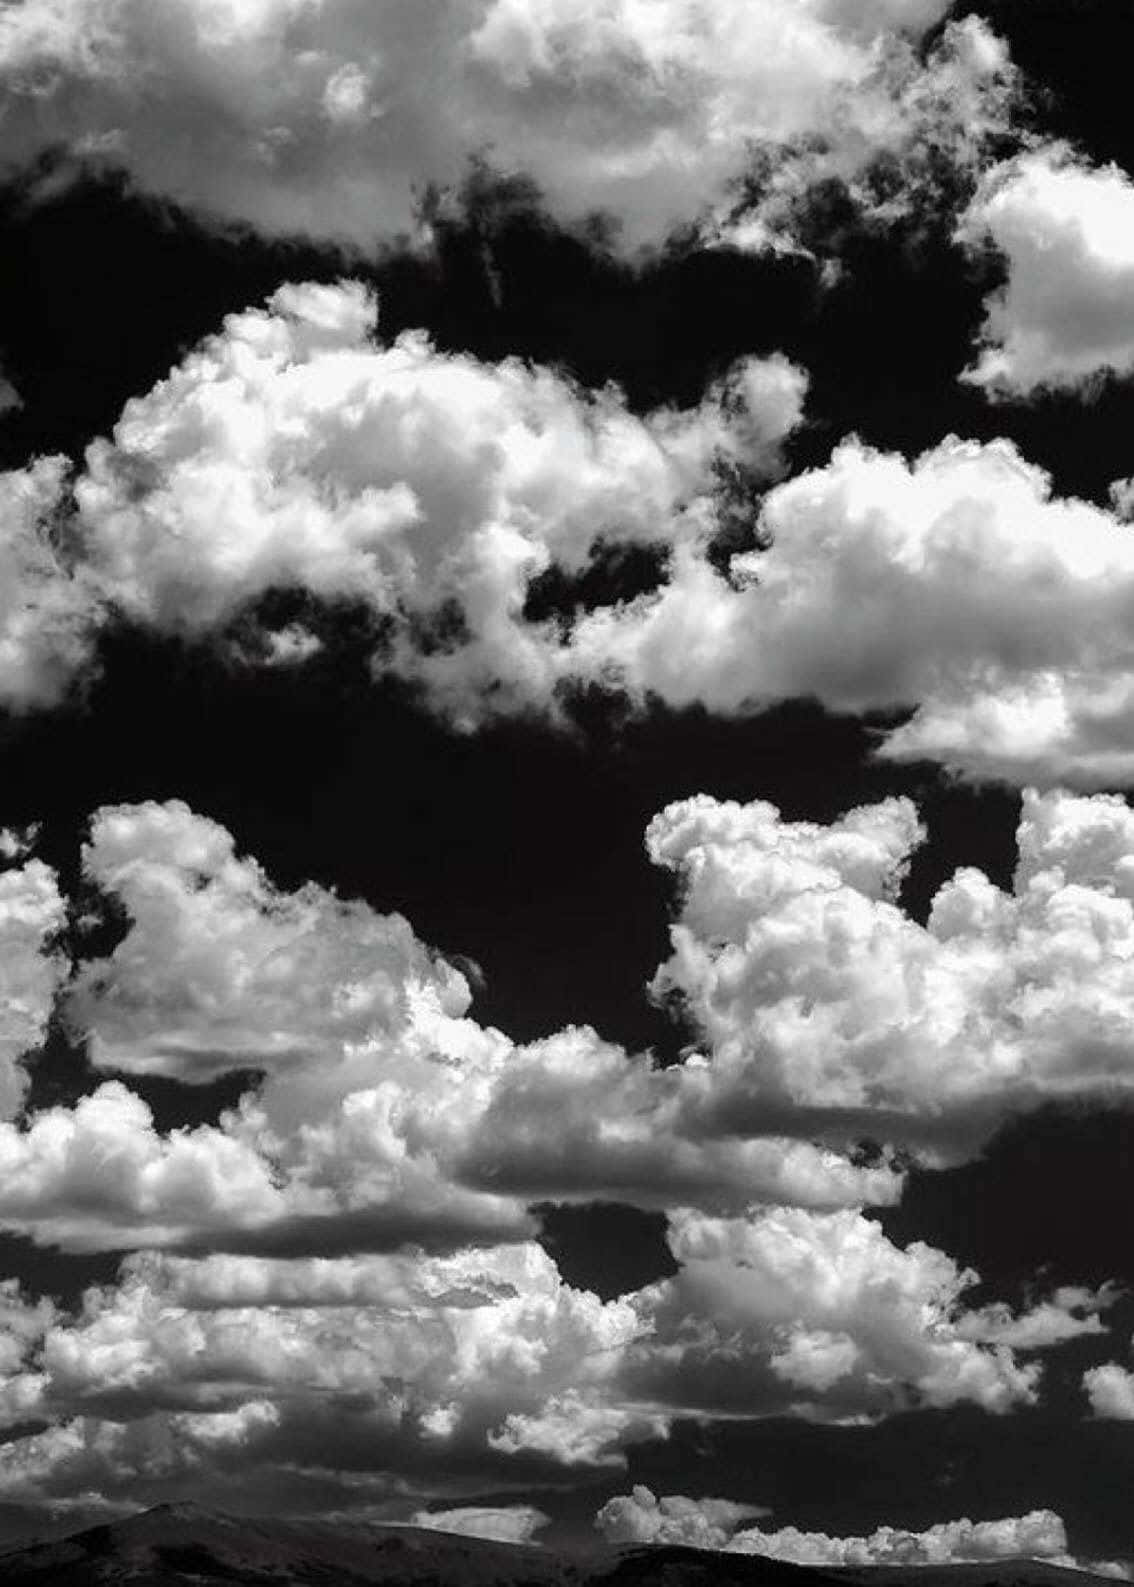 Nyd tordenvejret med den smukke sort-hvide sky wallpaper. Wallpaper